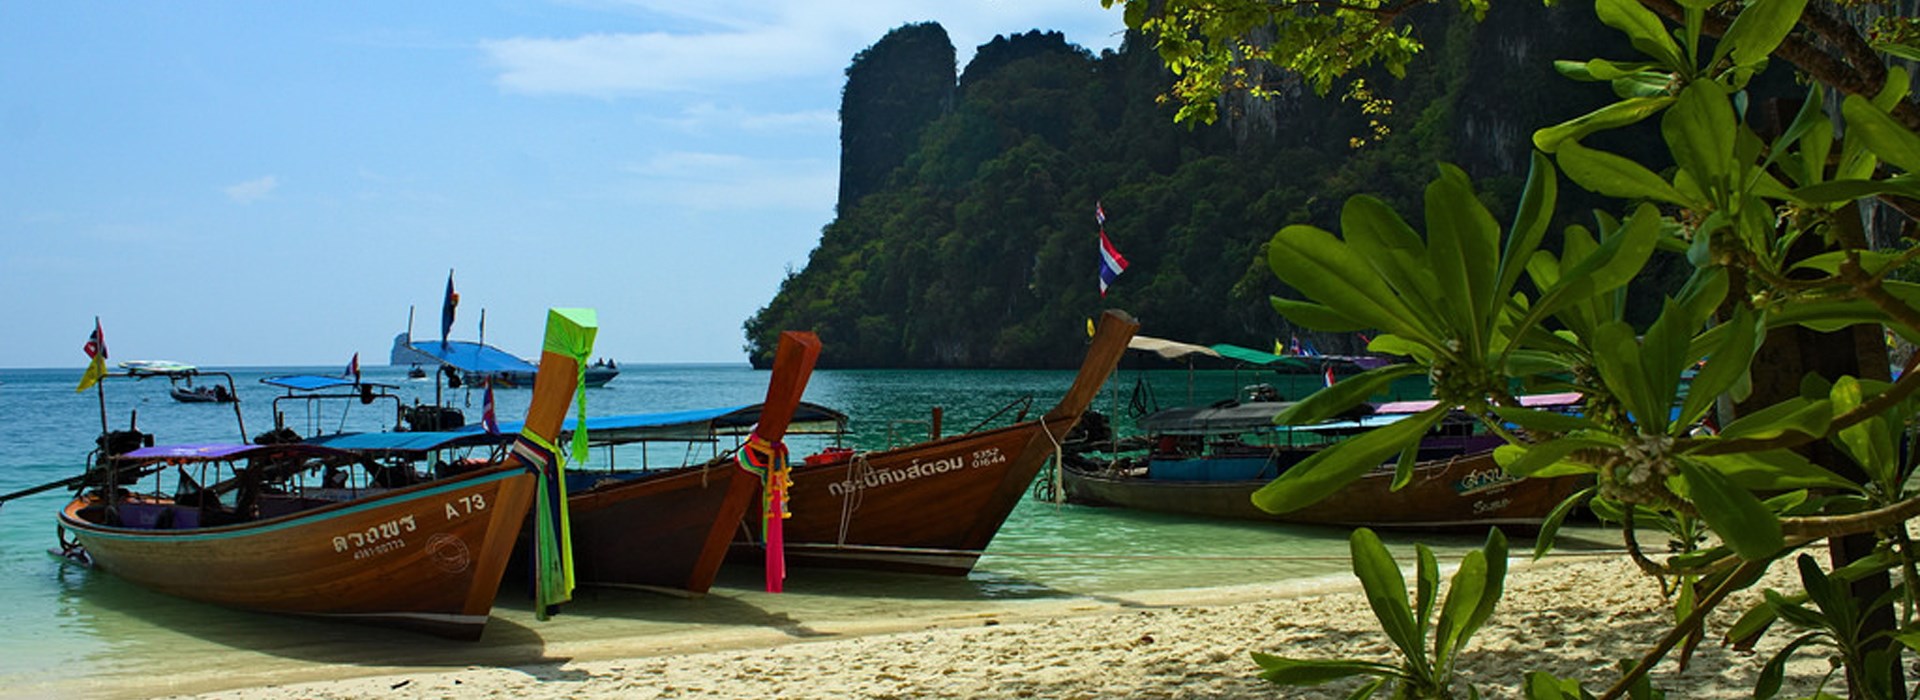 Visiter Krabi - Thaïlande